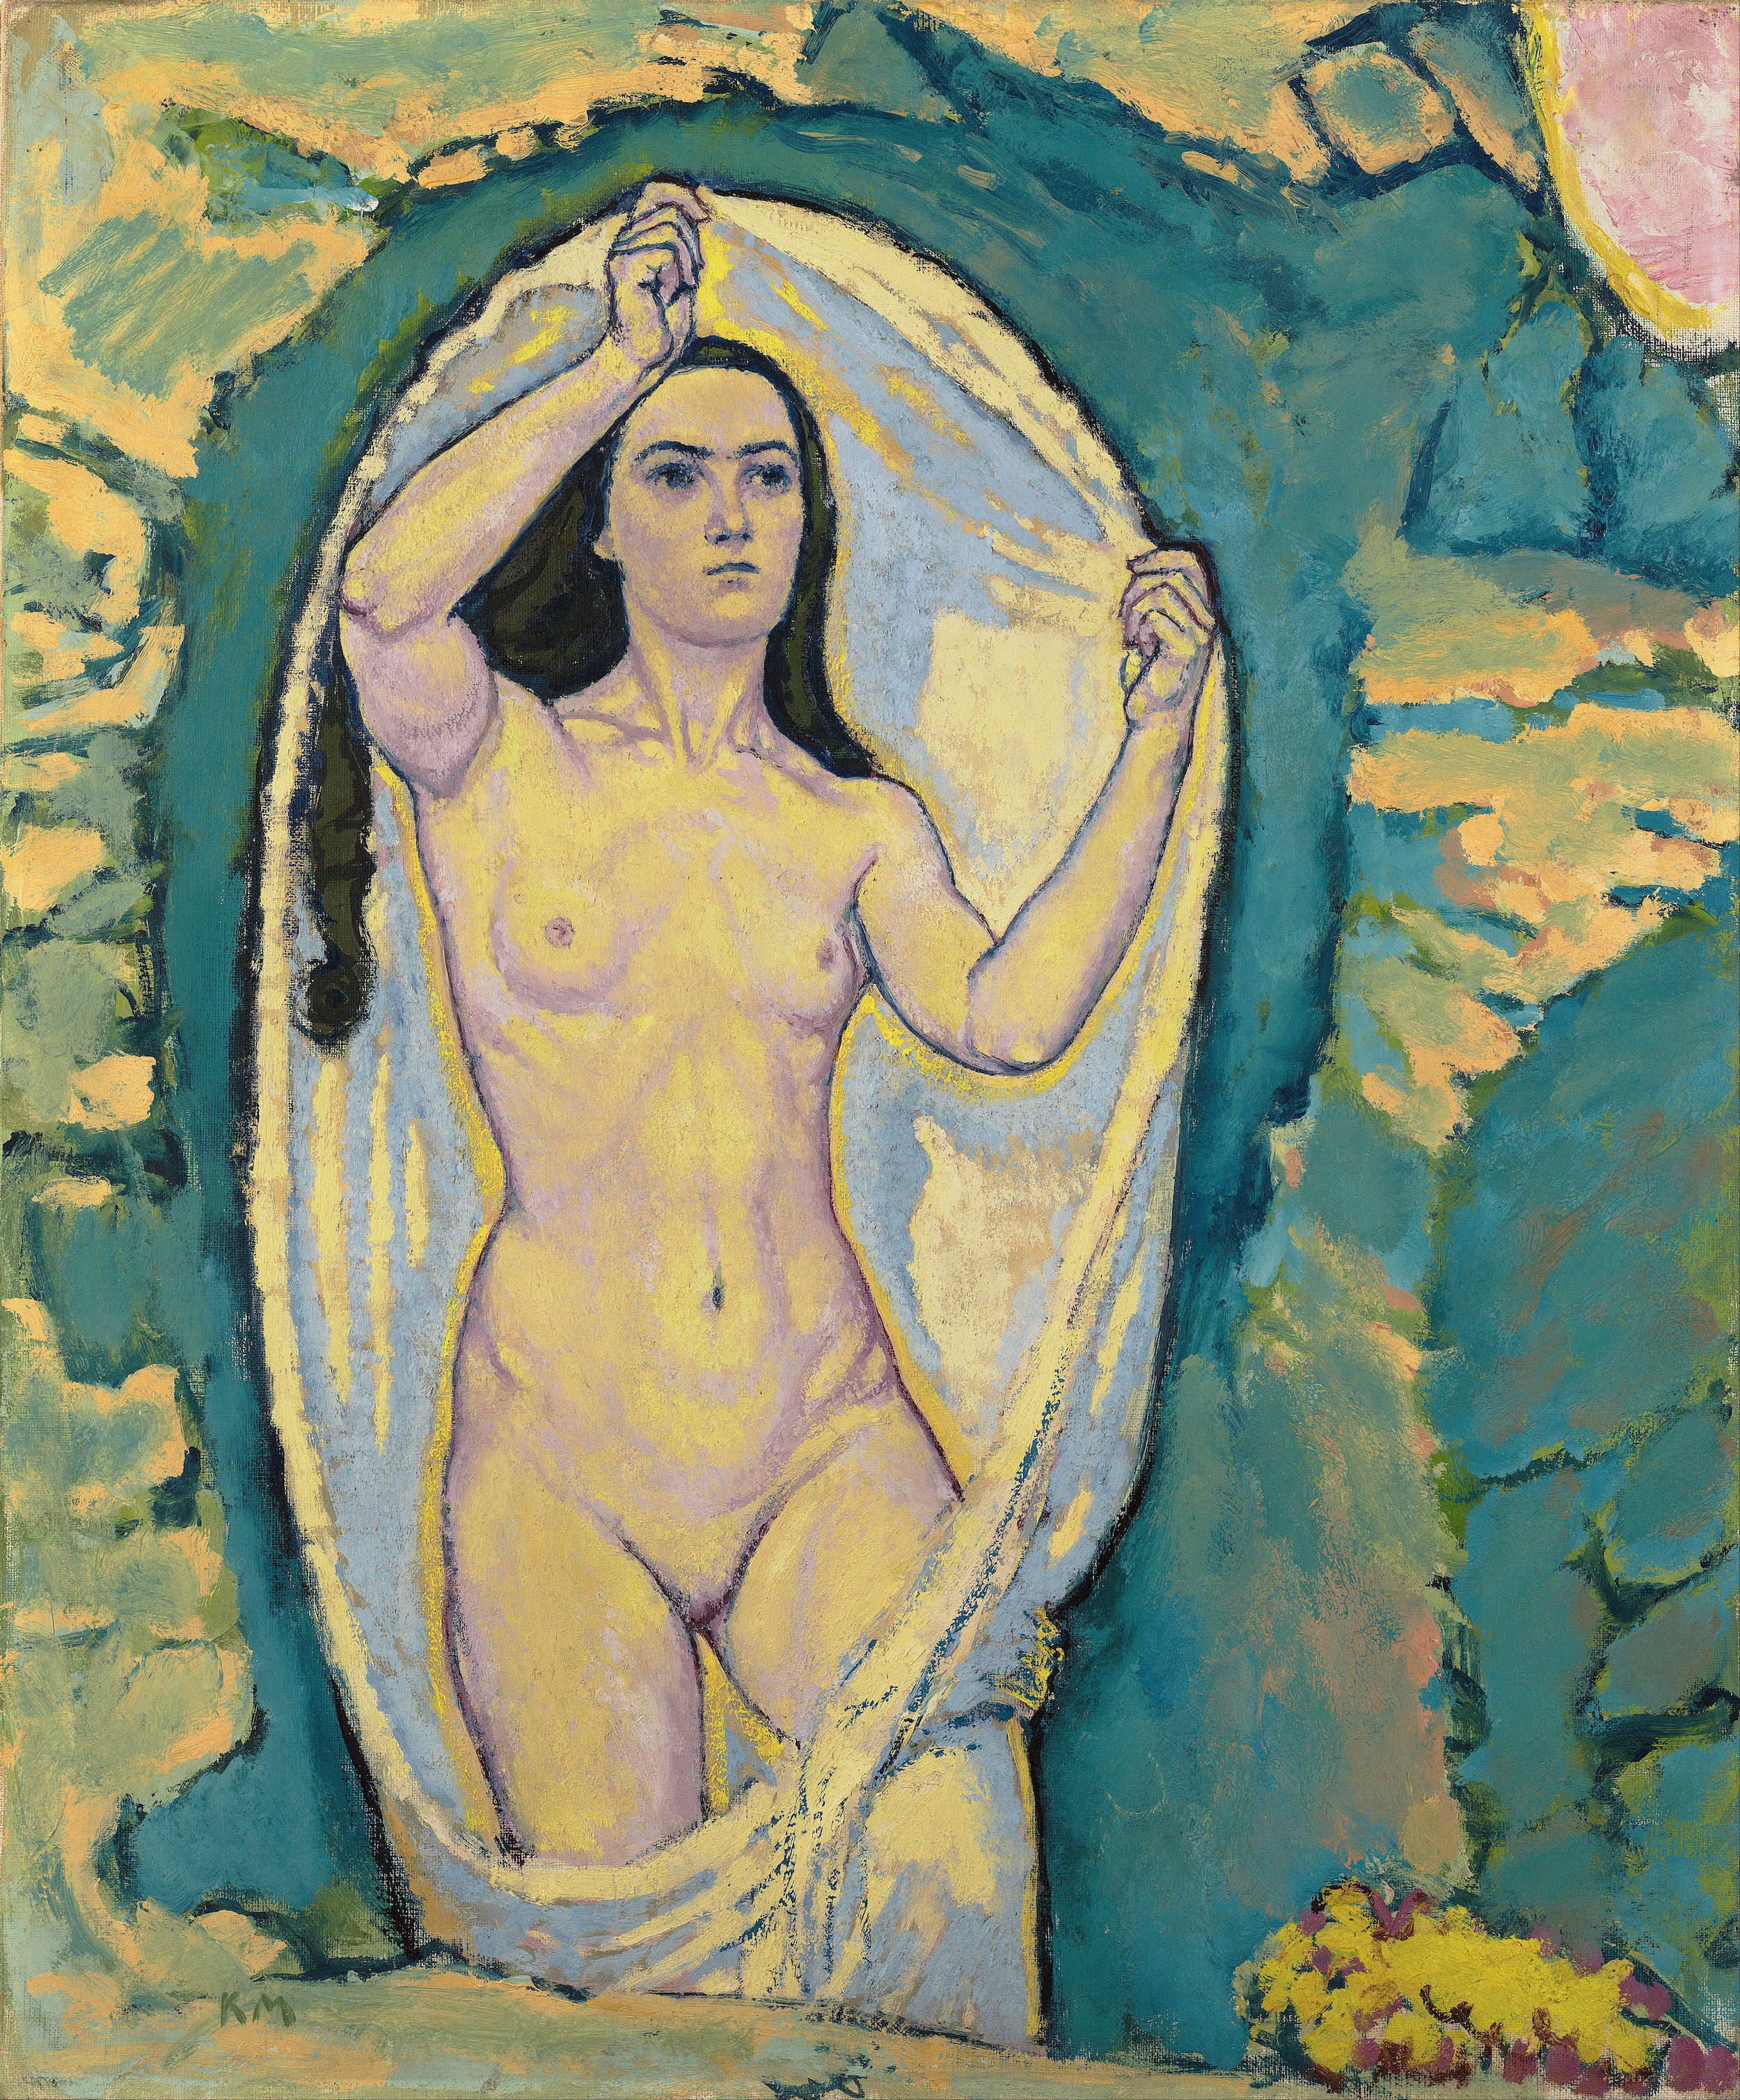 Venus in de grot by Koloman Moser - 1914 - 62,7 x 75,5 cm Leopold Museum